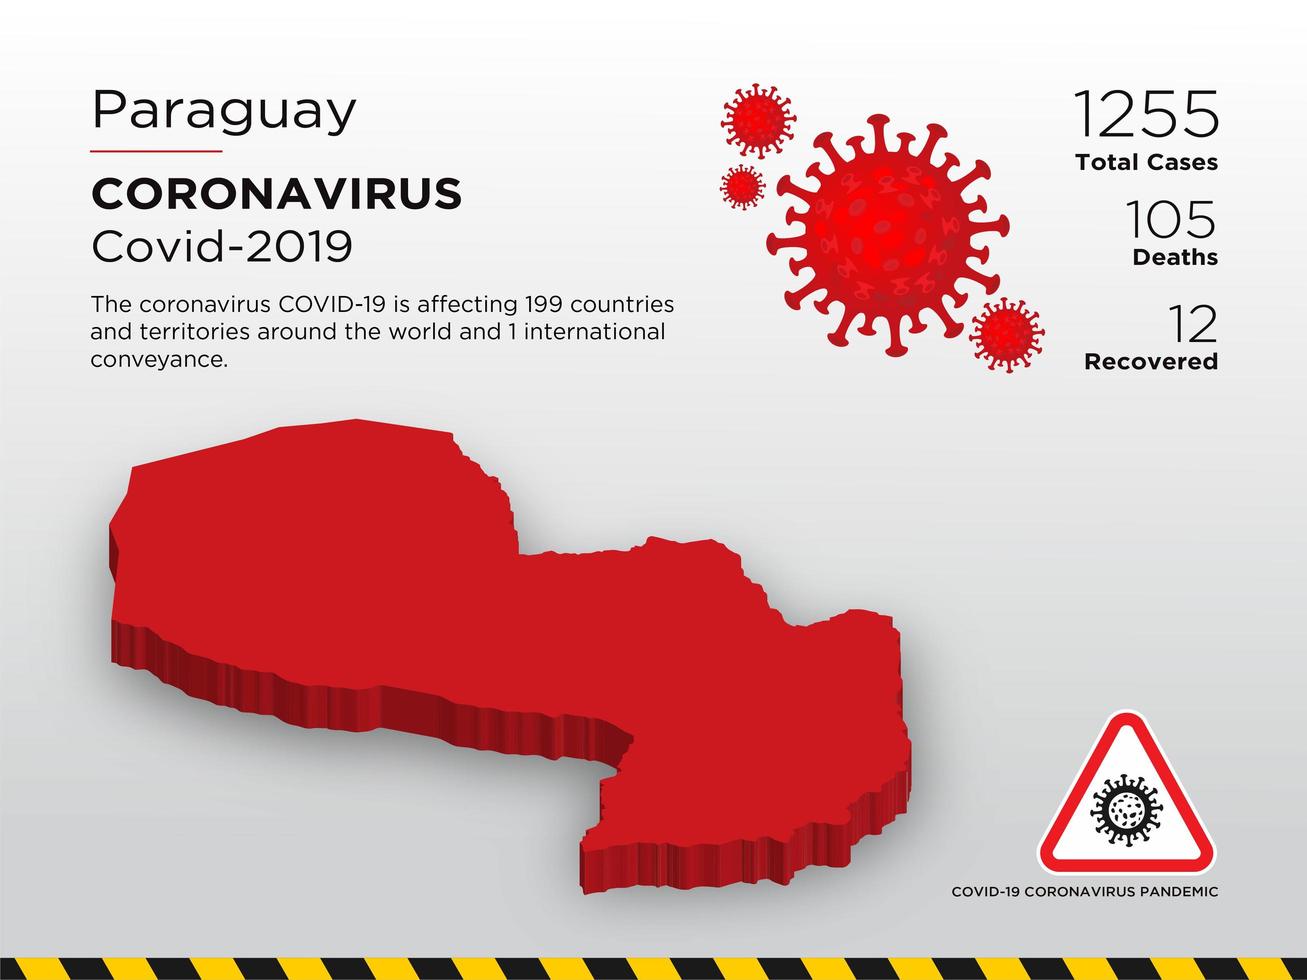 carte du pays touché par le coronavirus au paraguay vecteur